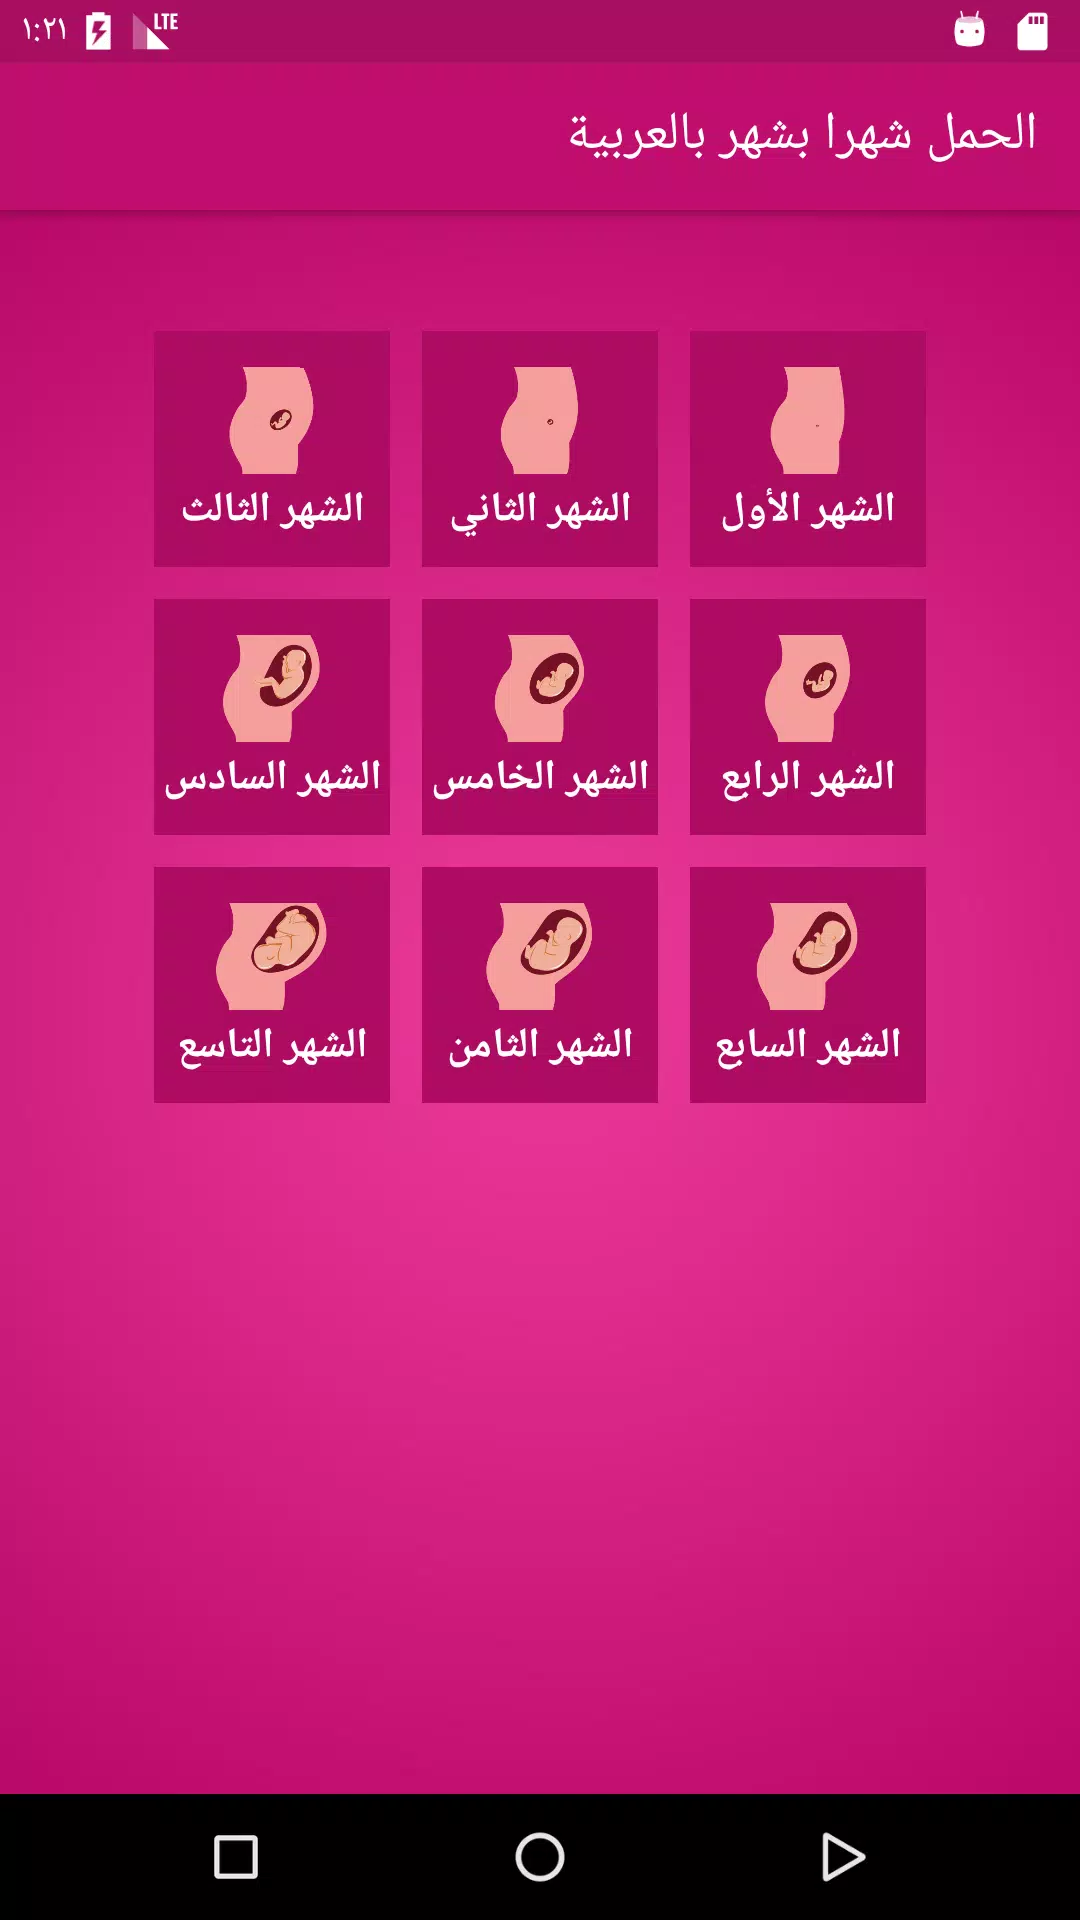 الحمل شهرا بشهر بالعربية APK for Android Download